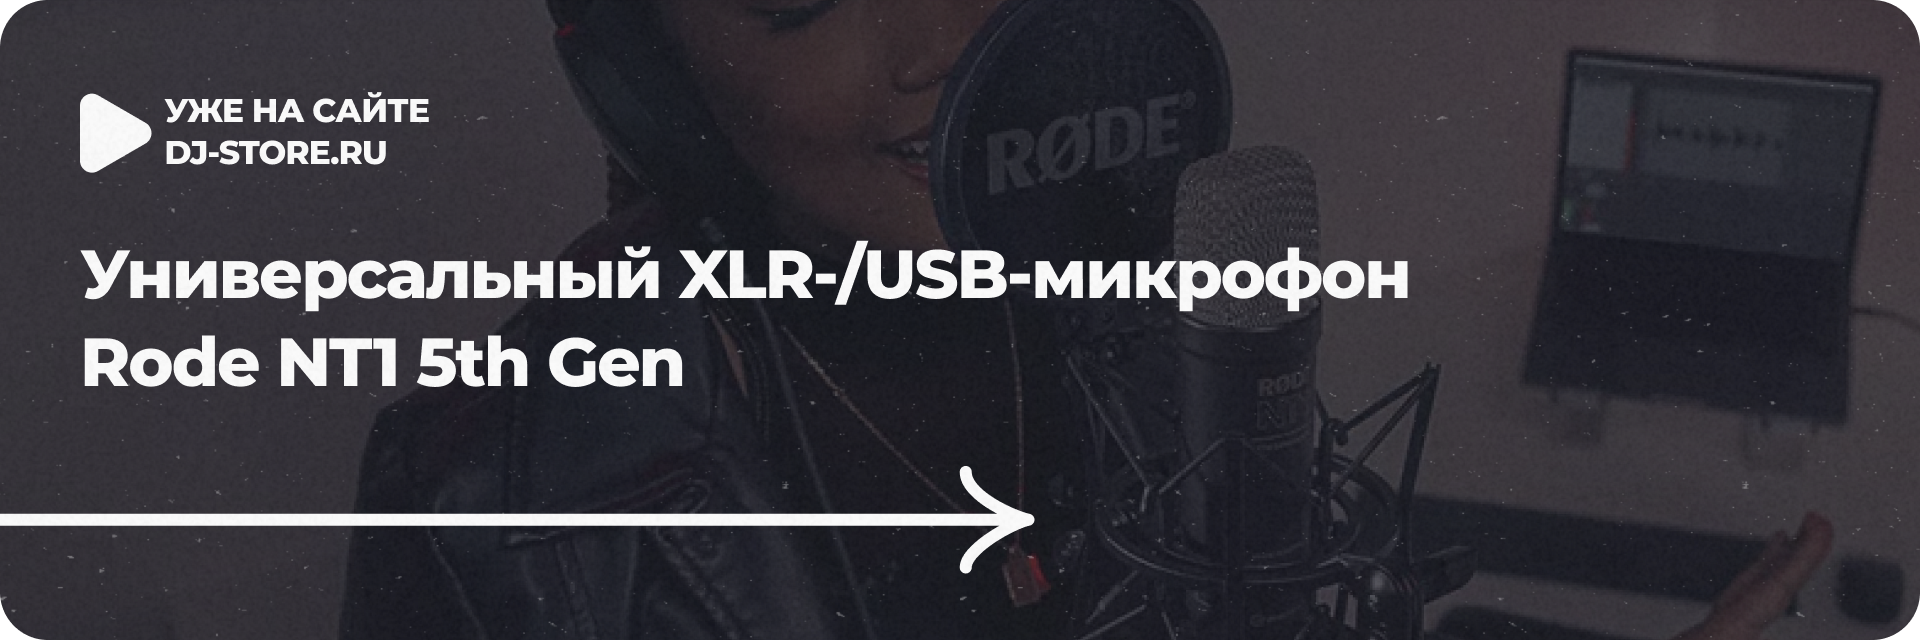 Универсальный XLR-/USB-микрофон Rode NT1 5th Gen